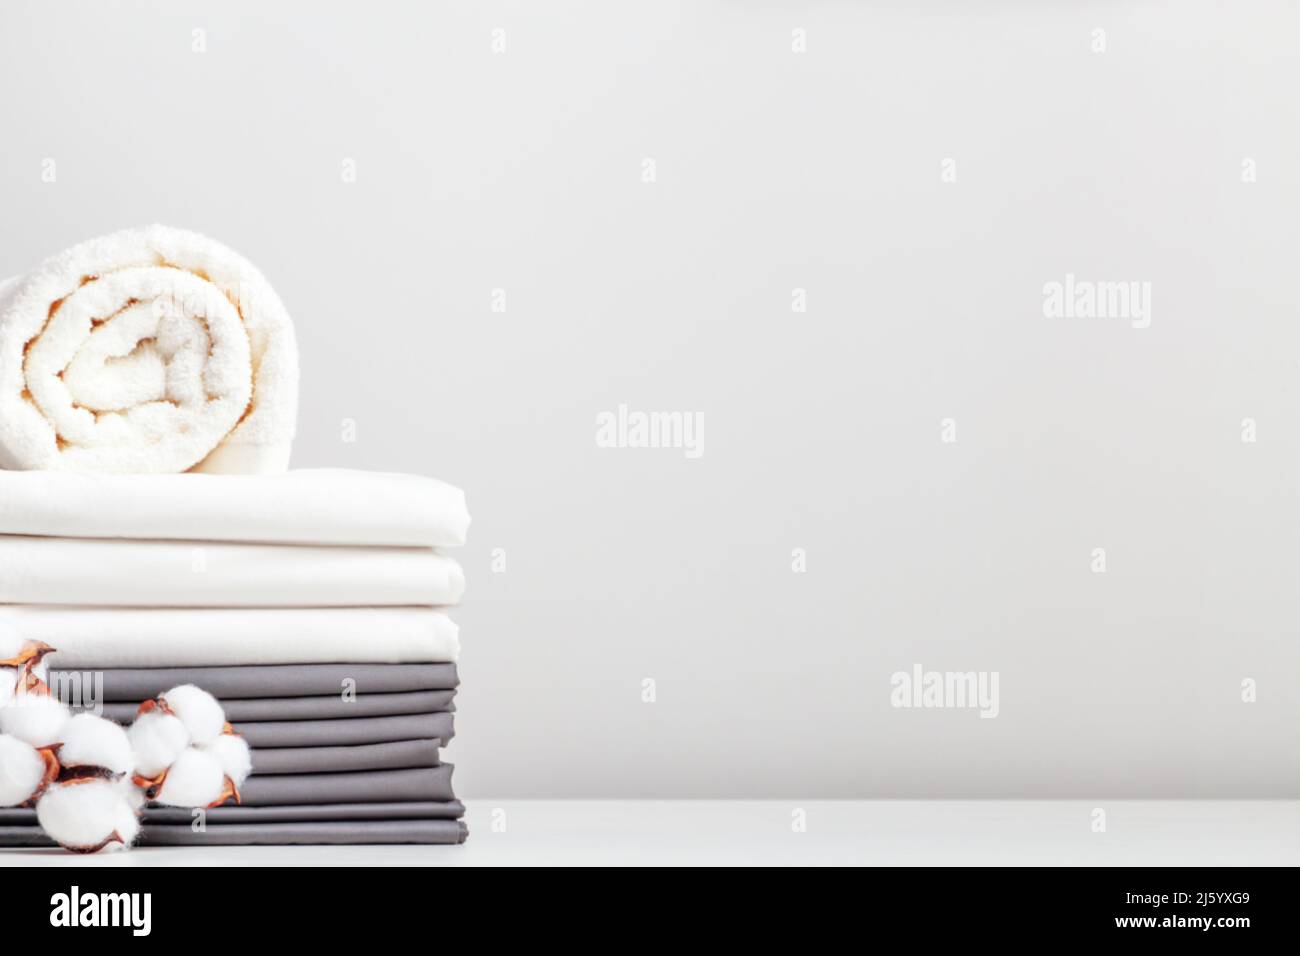 Ein Stapel grauer und weißer Bettwäsche, Bettwäsche und eine Rolle Handtücher auf einem Tisch mit einem Zweig Baumwolle. Stockfoto